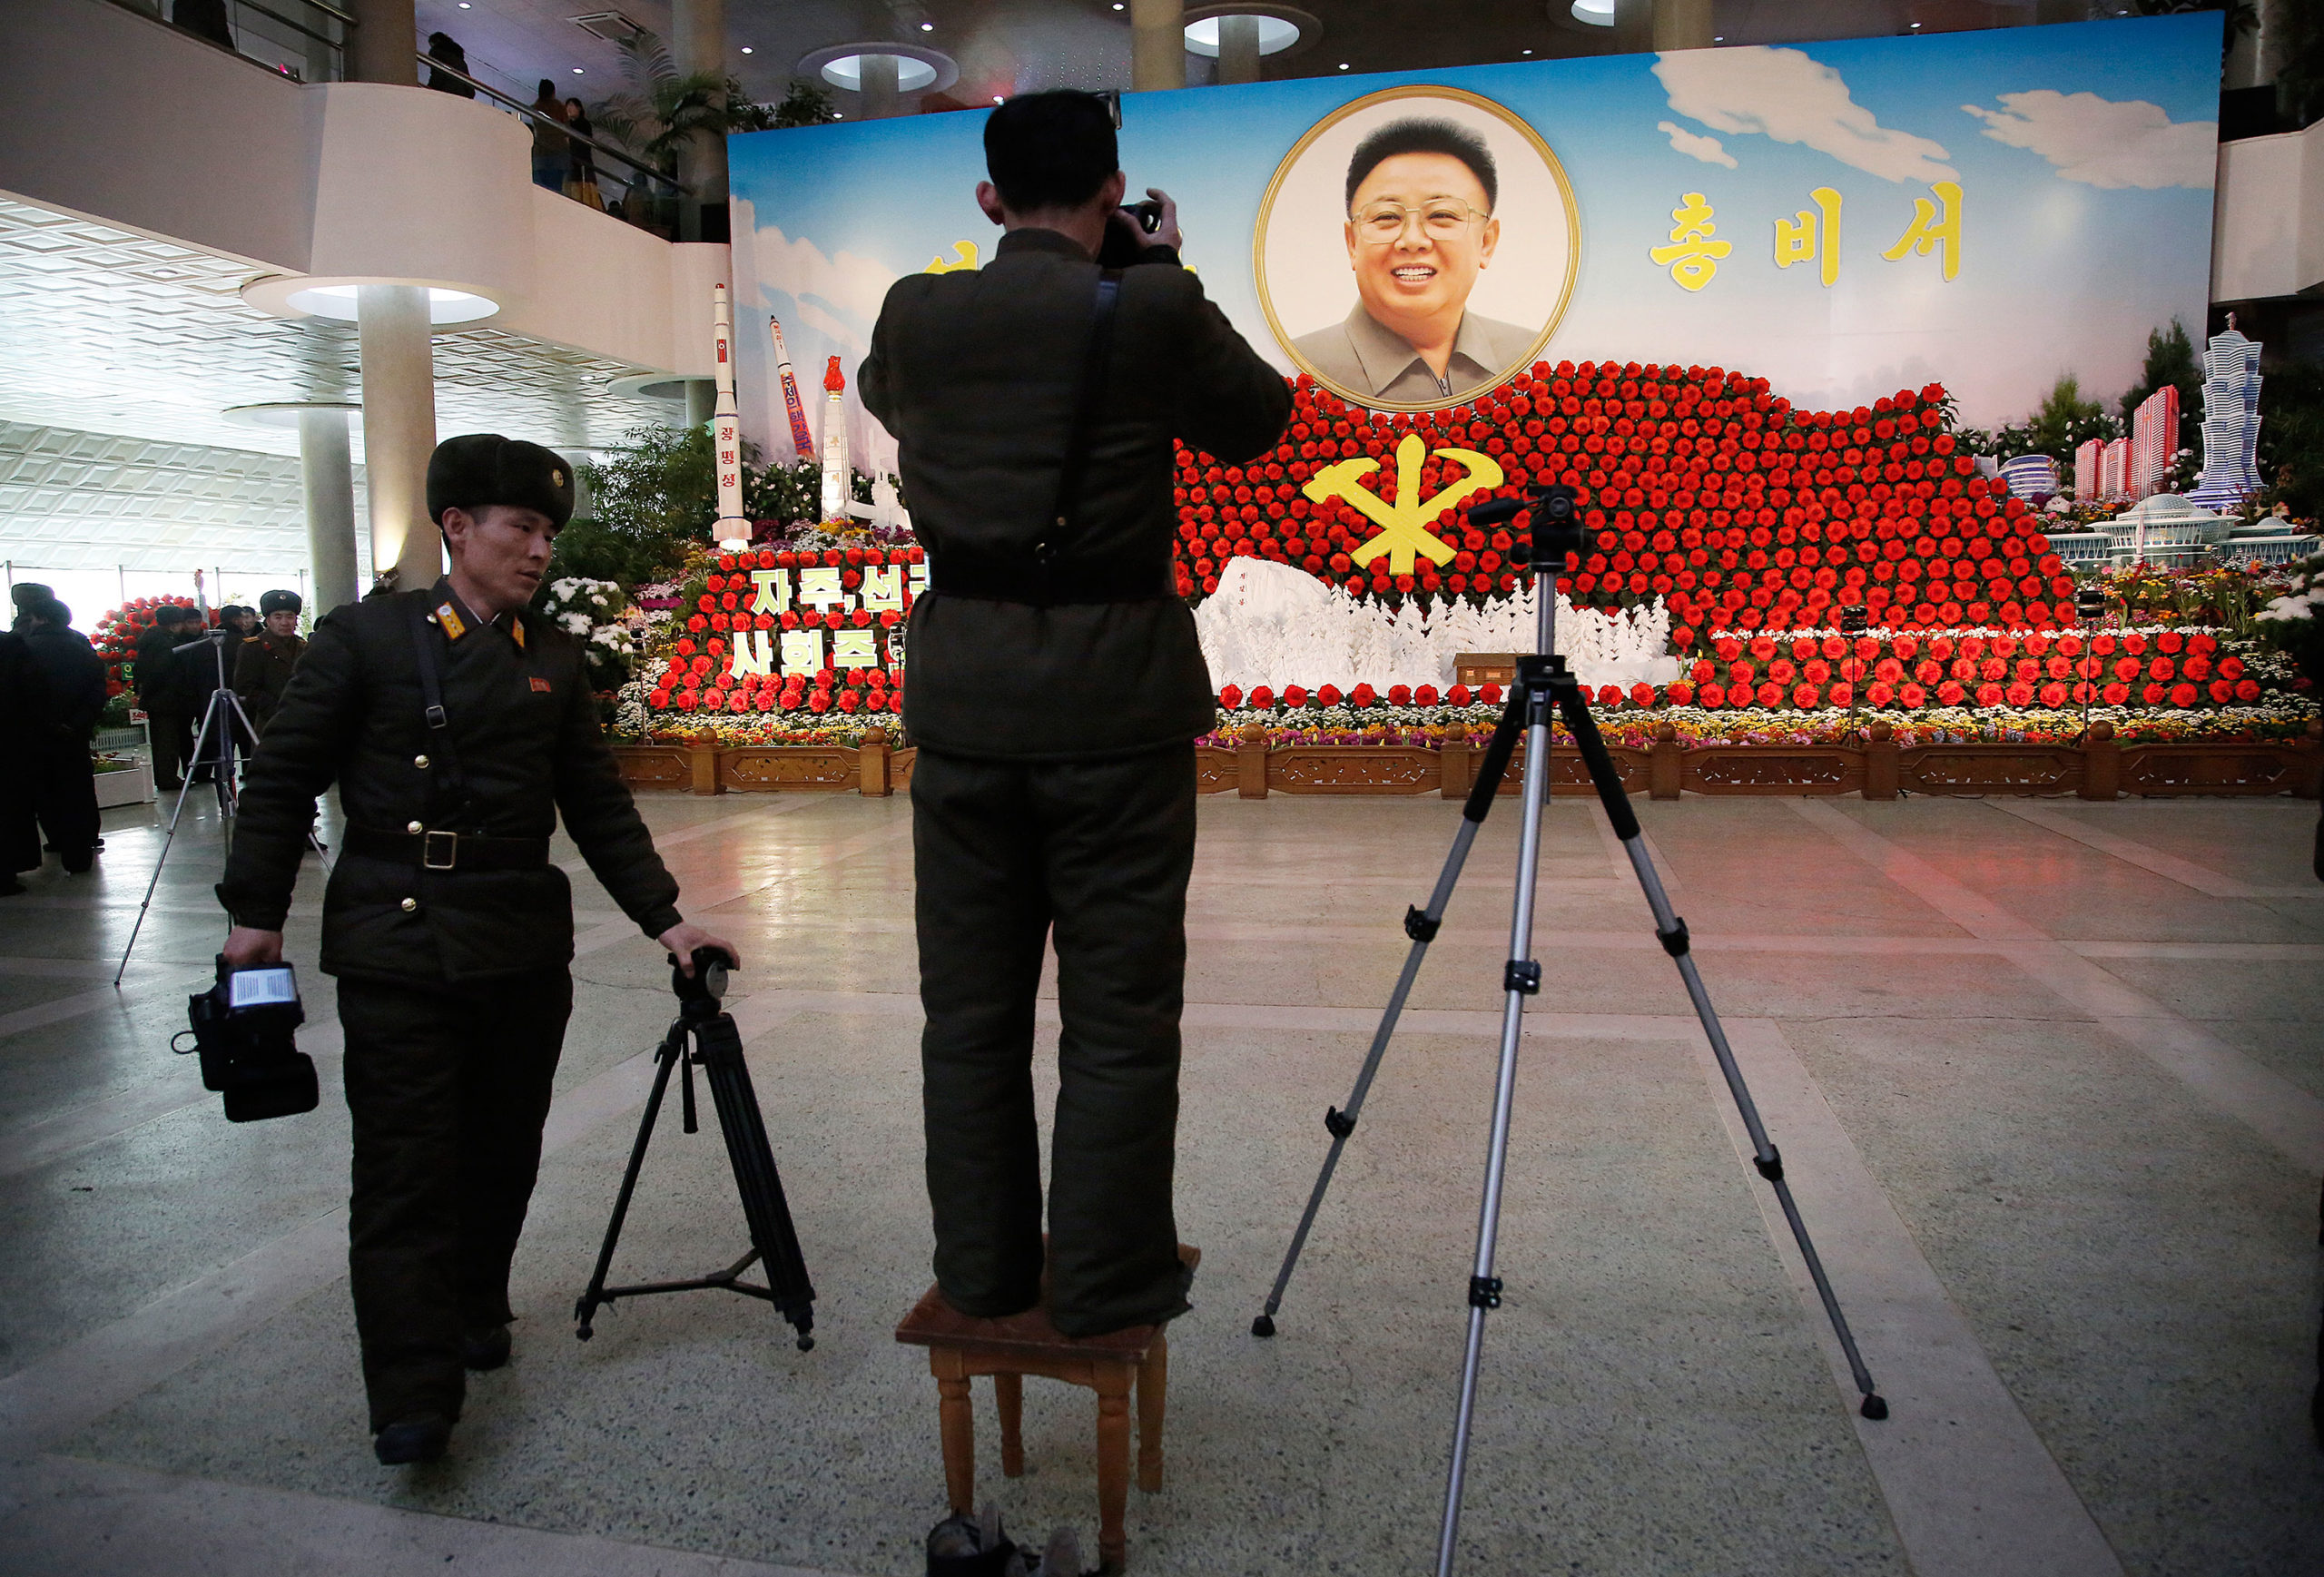 خشم رهبری و مقامات کره شمالی به دنبال توهین به انتشارات حاوی تصاویر رهبران کشور